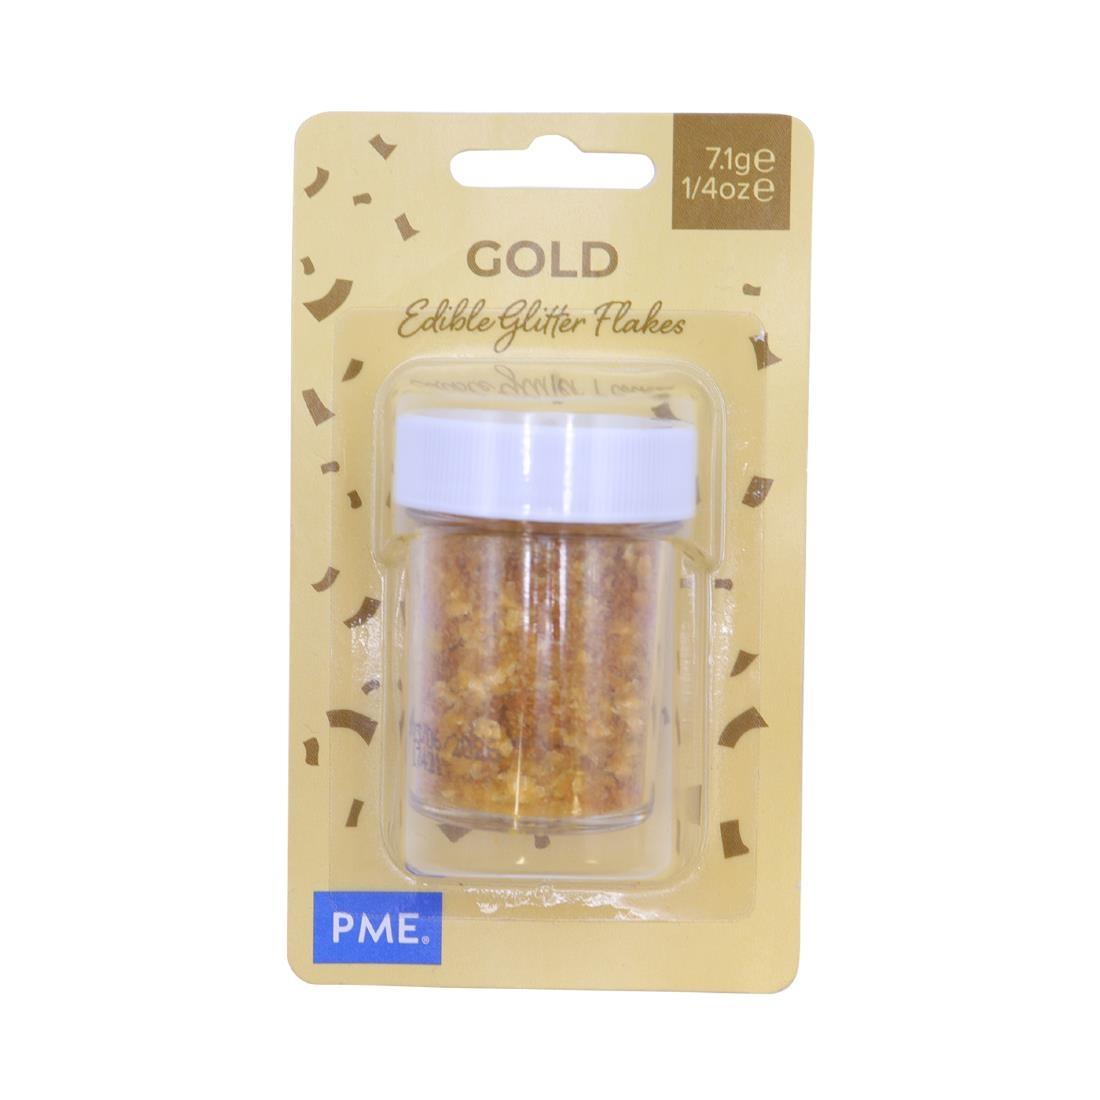 PME Glitter Flakes 7-1g - Gold (HU329)